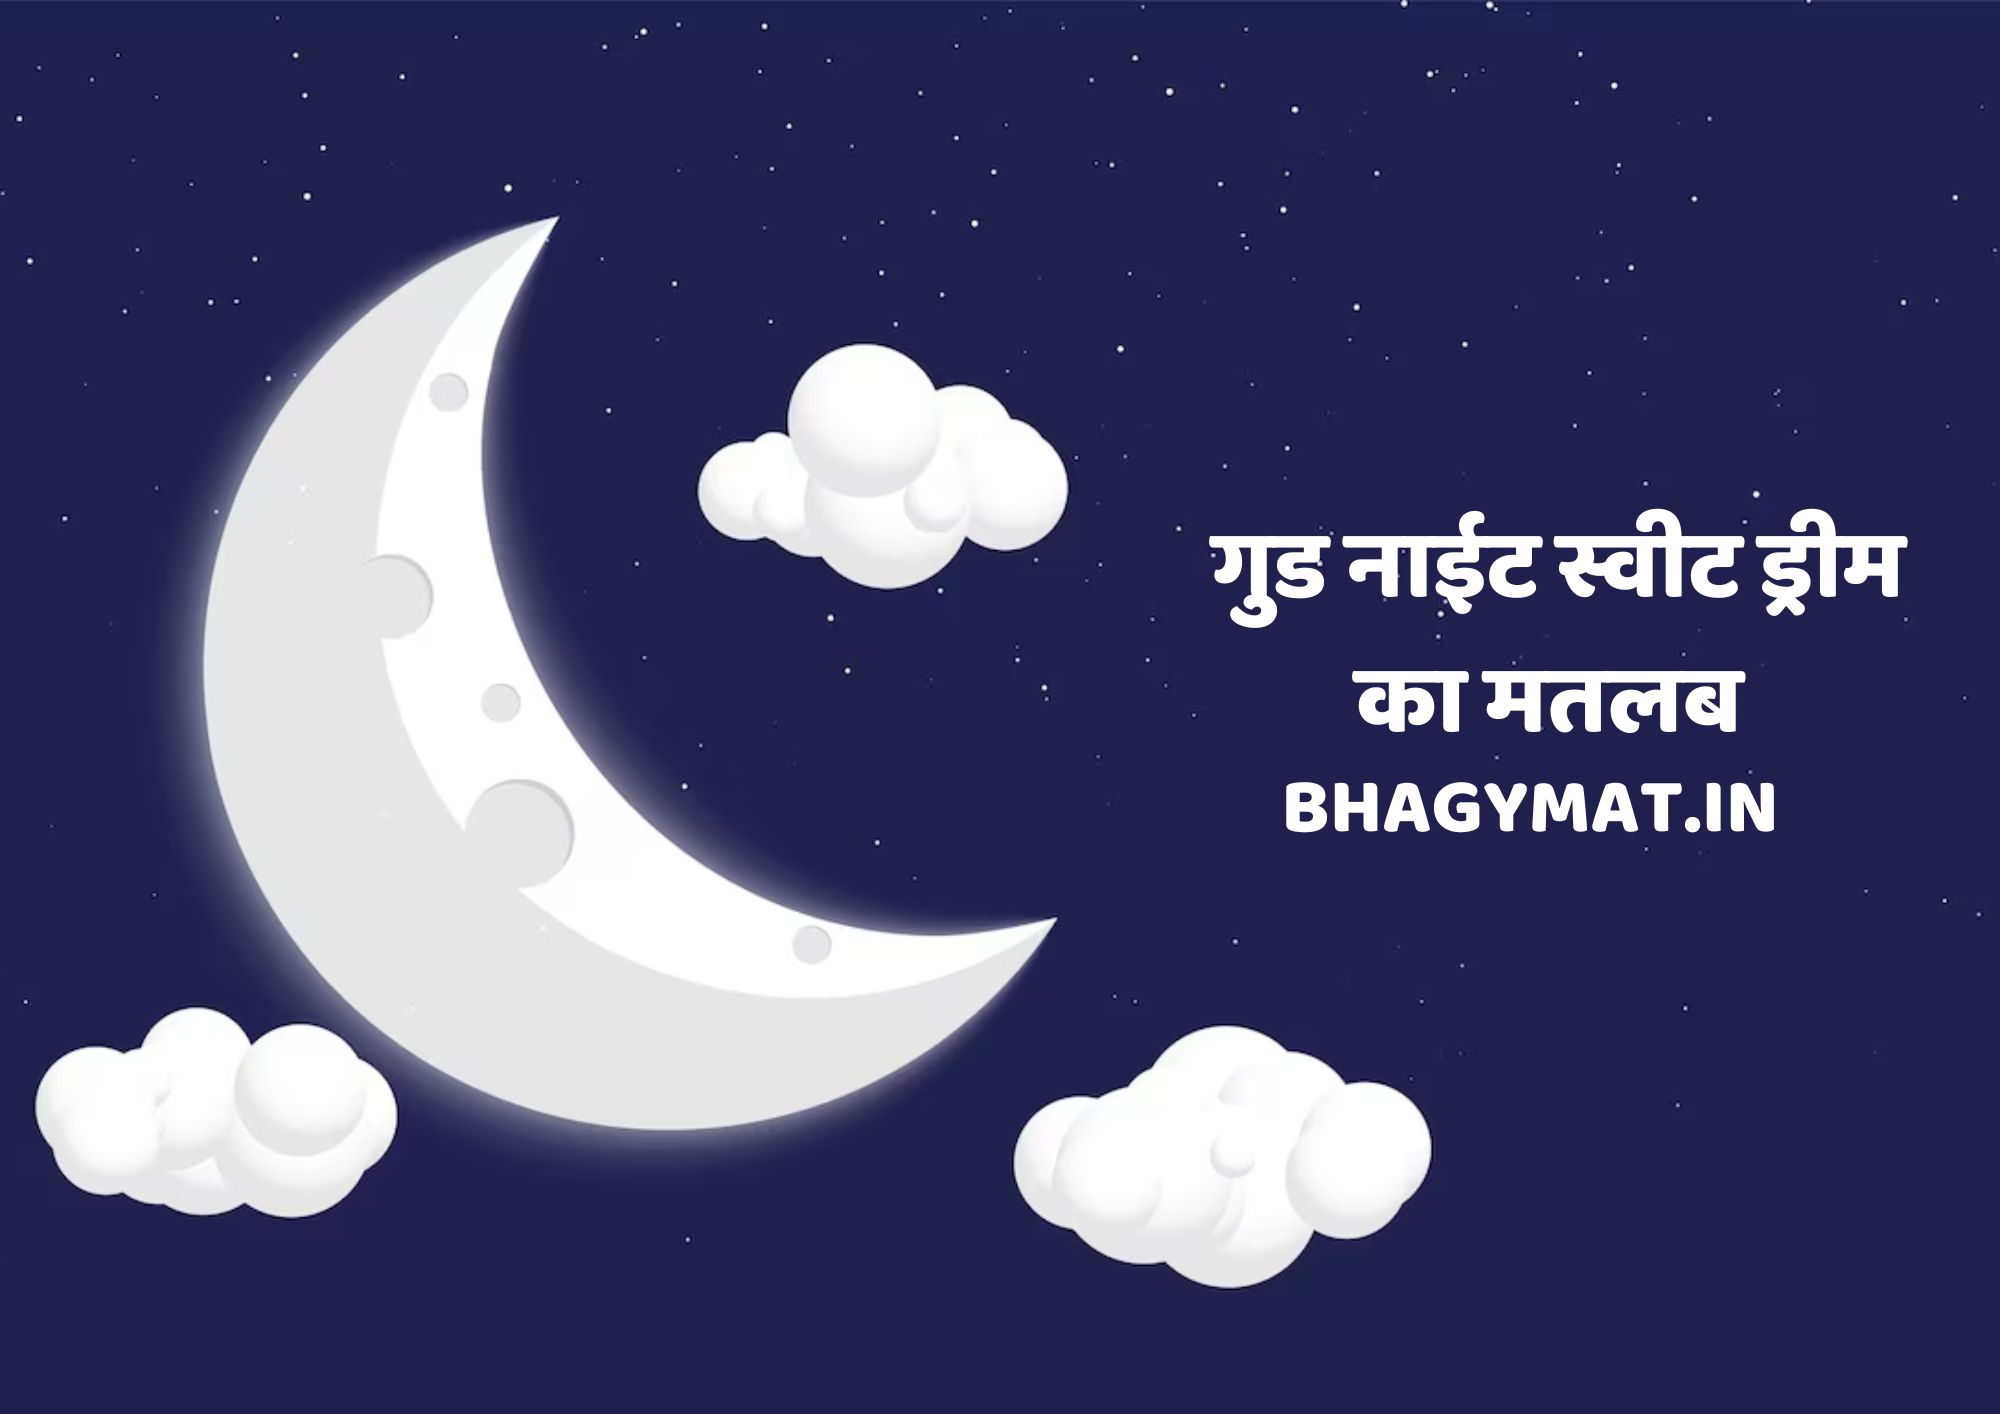 गुड नाईट स्वीट ड्रीम का मतलब क्या होता है (Good Night Sweet Dreams Ka Matlab Kya Hota Hai) - Good Night Sweet Dreams Meaning In Hindi